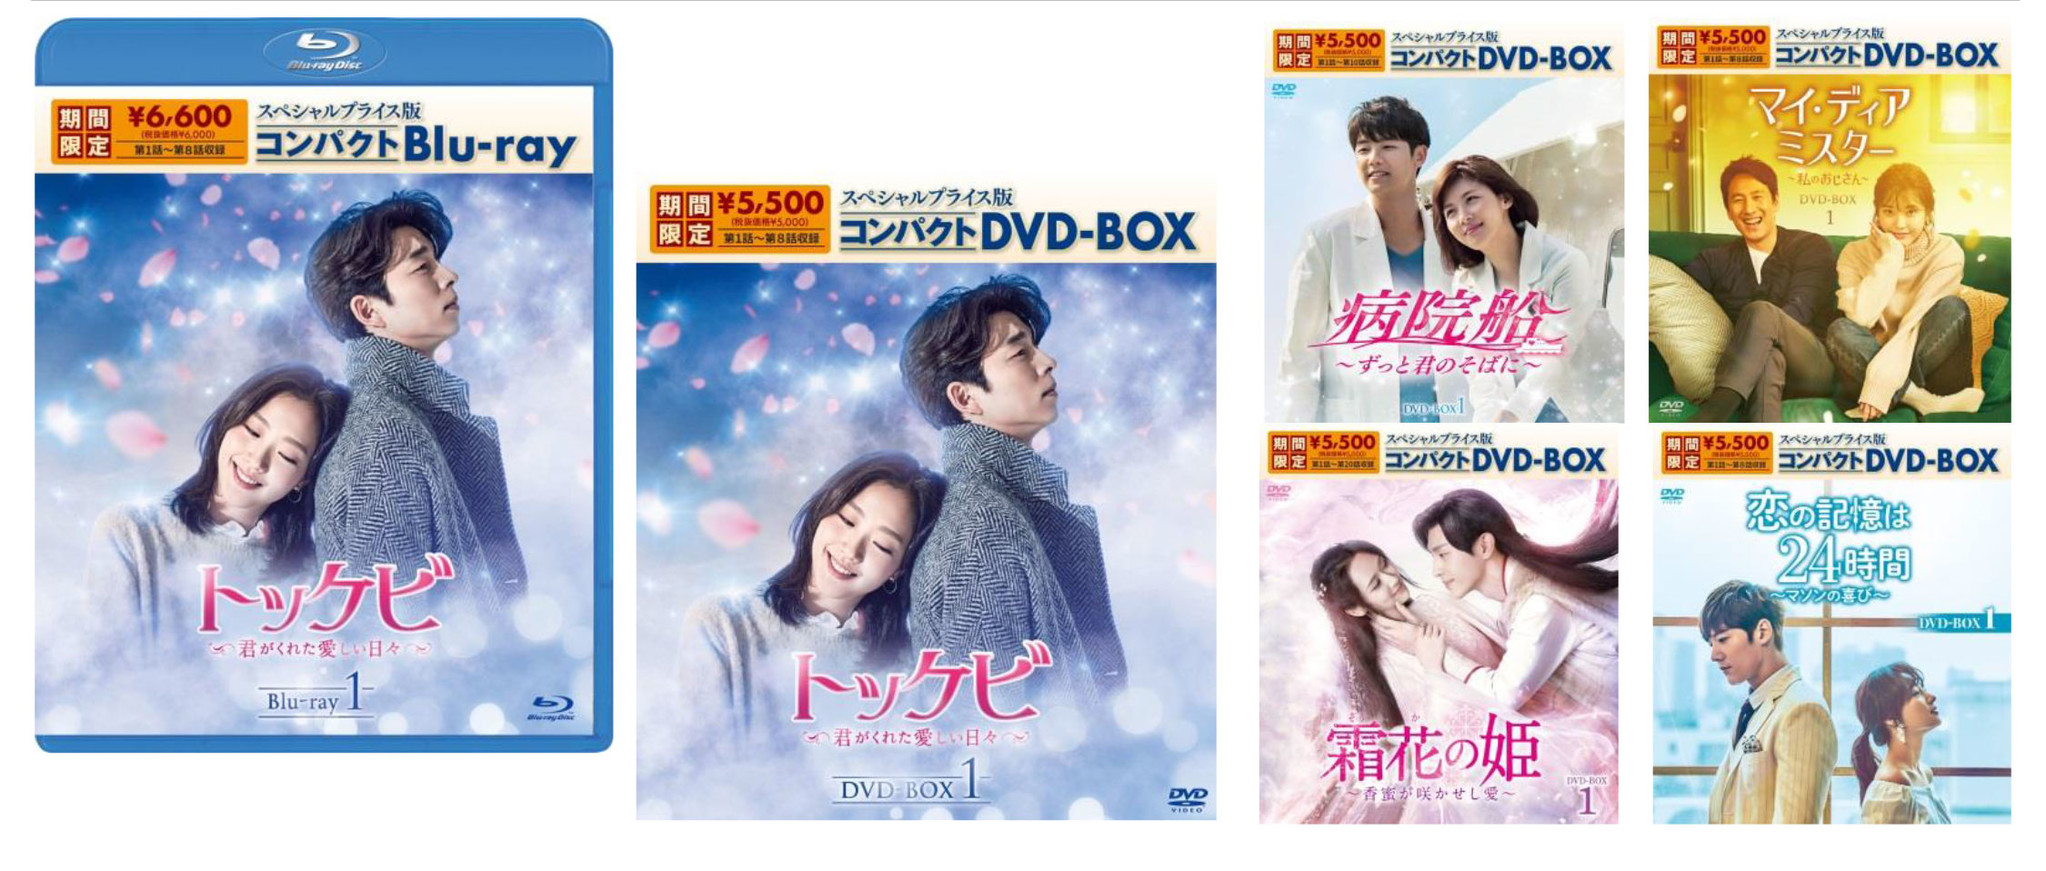 低価新作登場 トッケビ~君がくれた愛しい日々~ Blu-ray BOX1+BOX2の ...